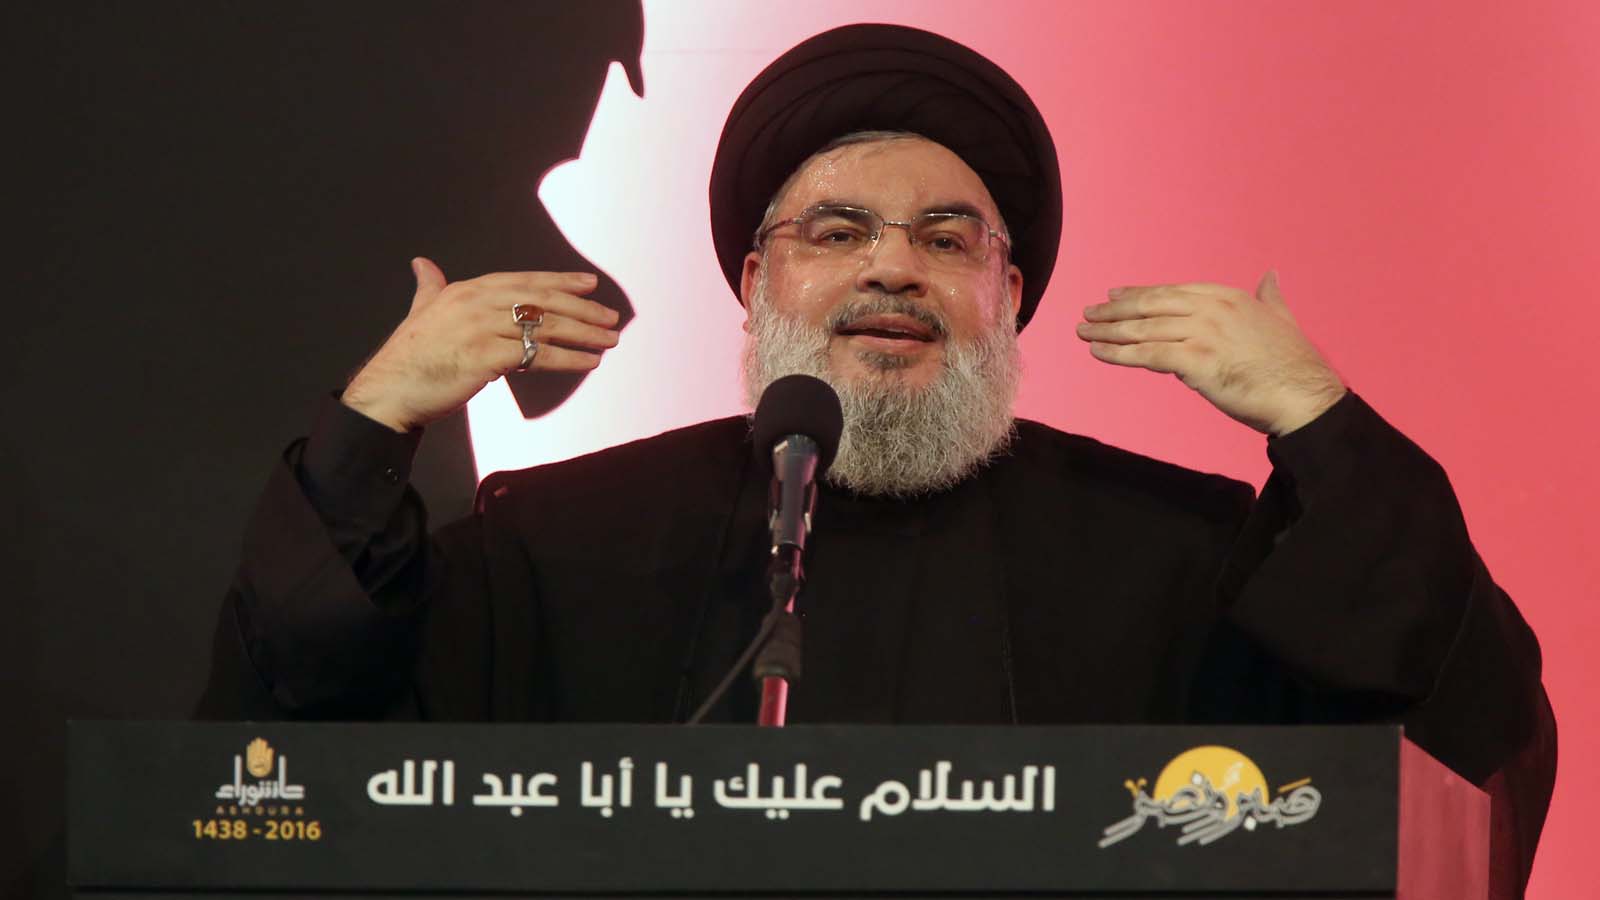 ماذا يريد حزب الله من الانتخابات؟